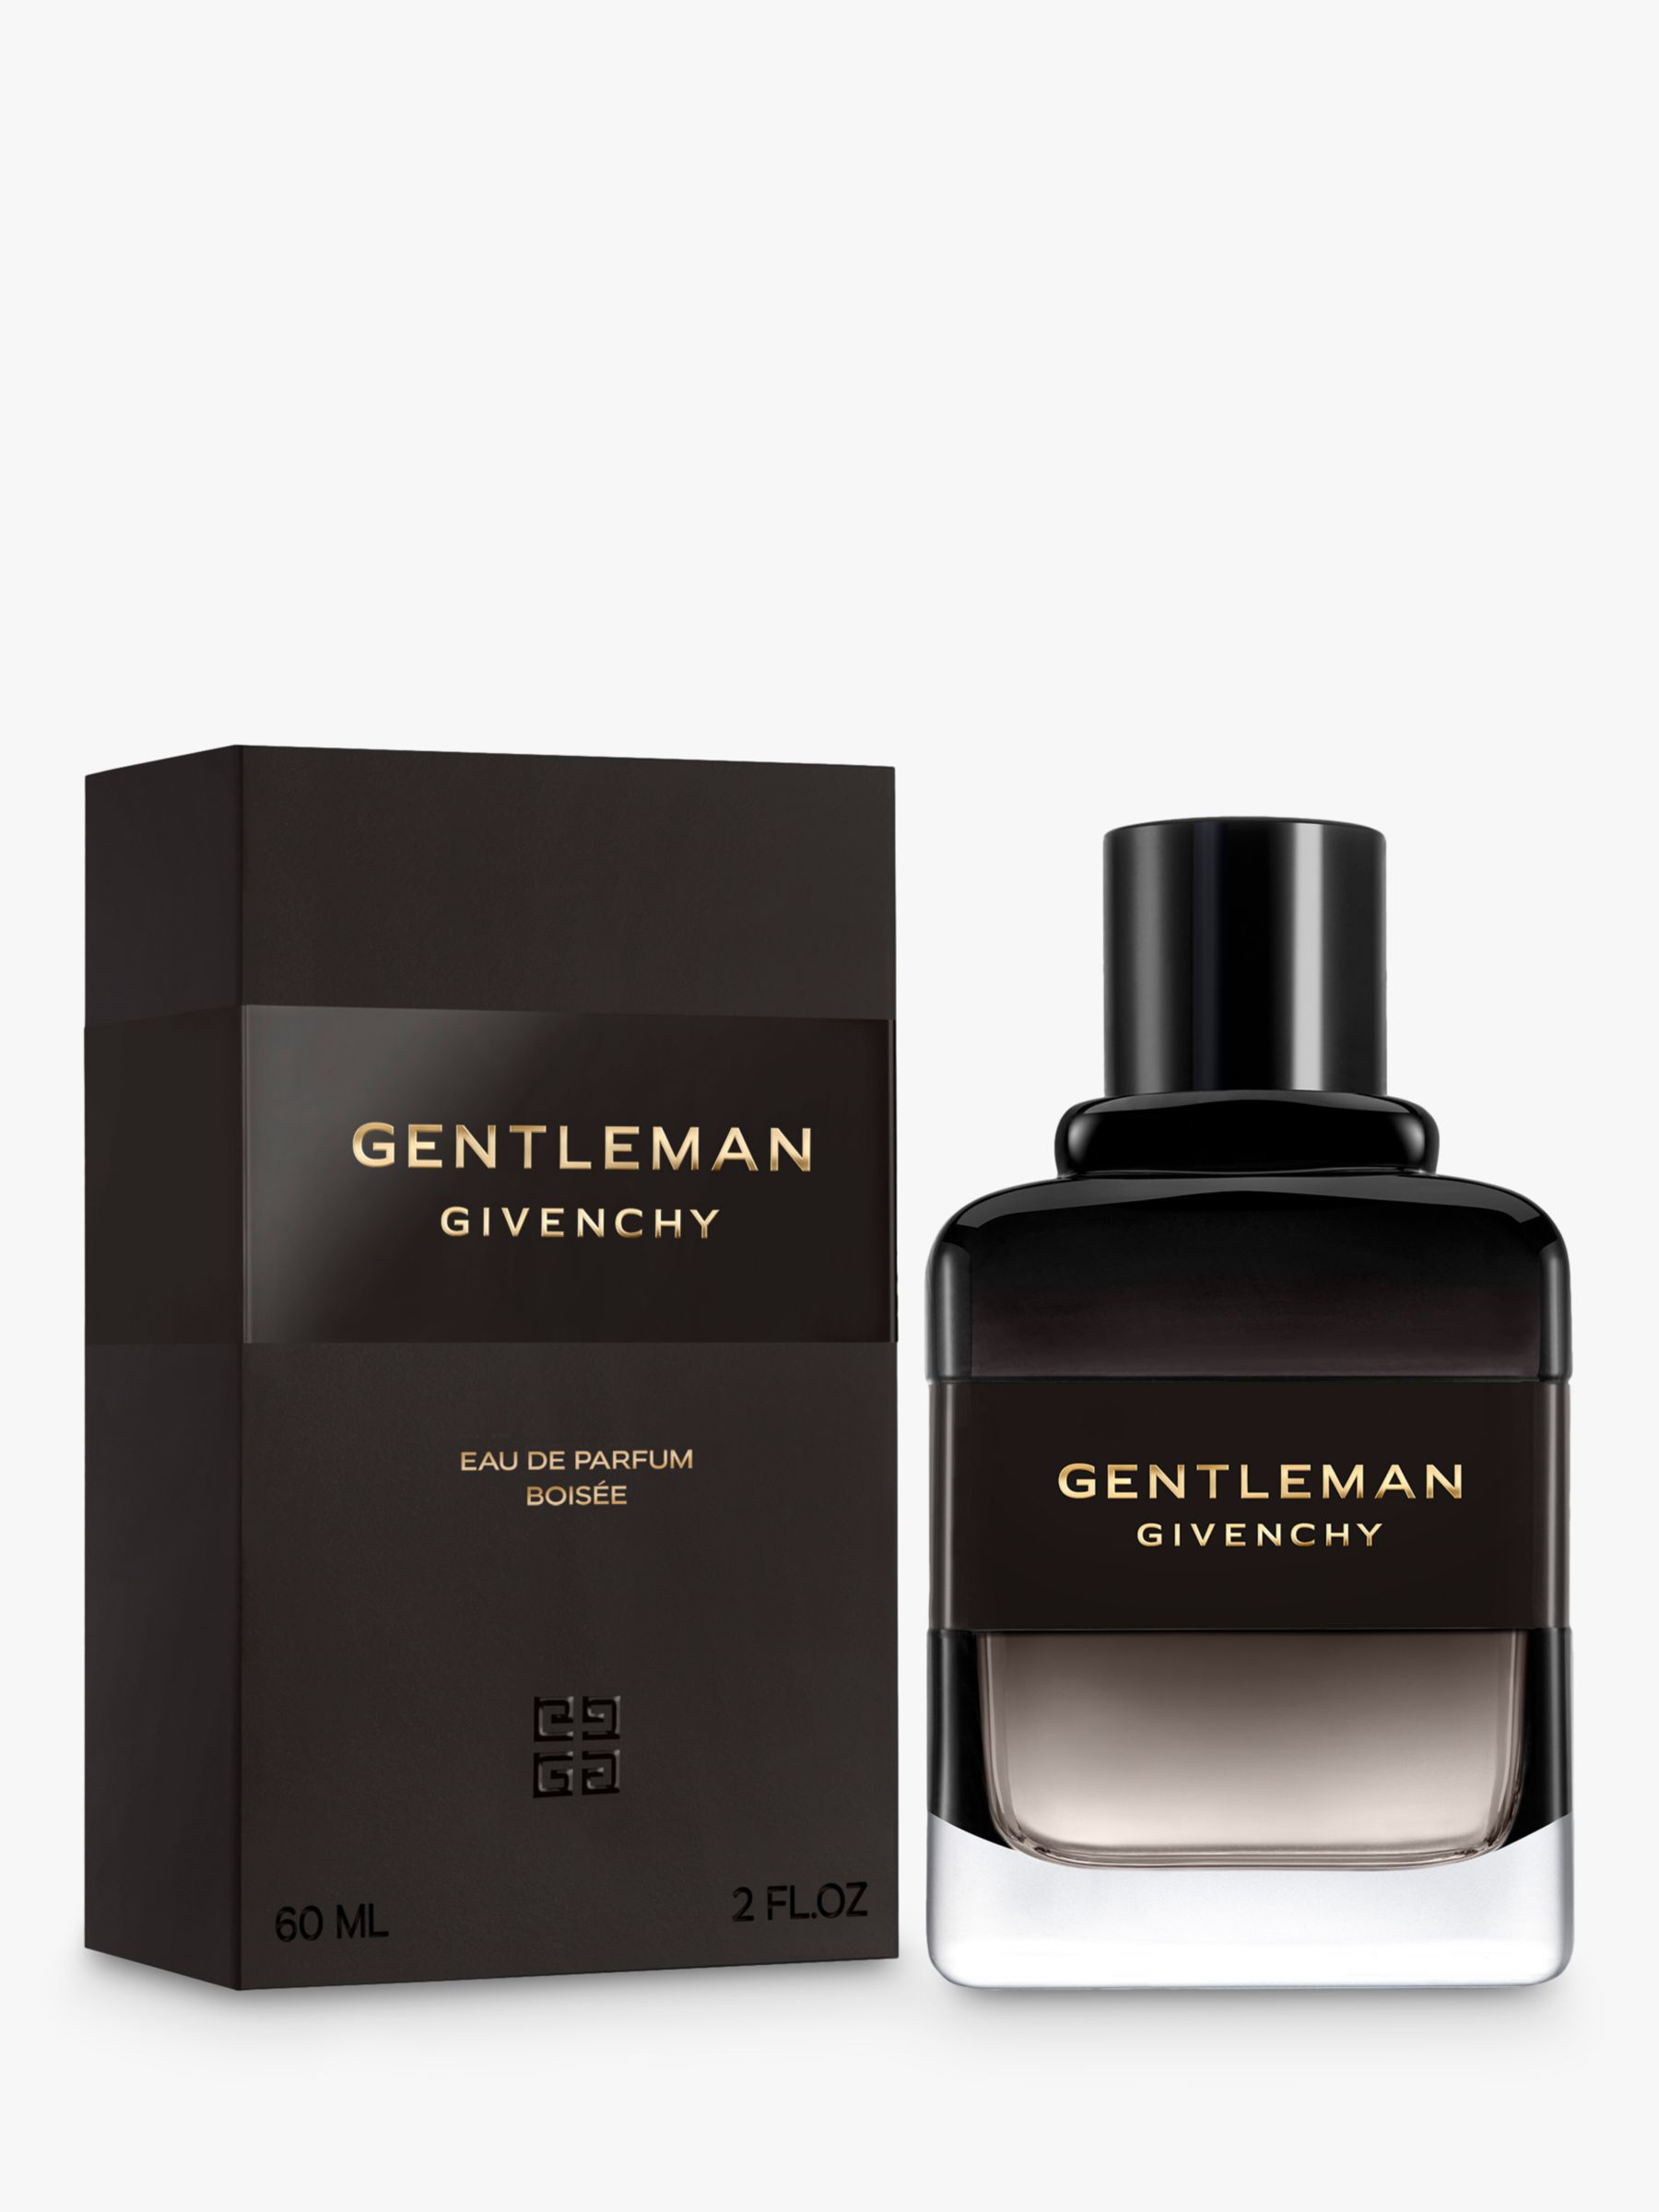 Givenchy Gentleman Eau de Parfum Boisée, 60ml 2